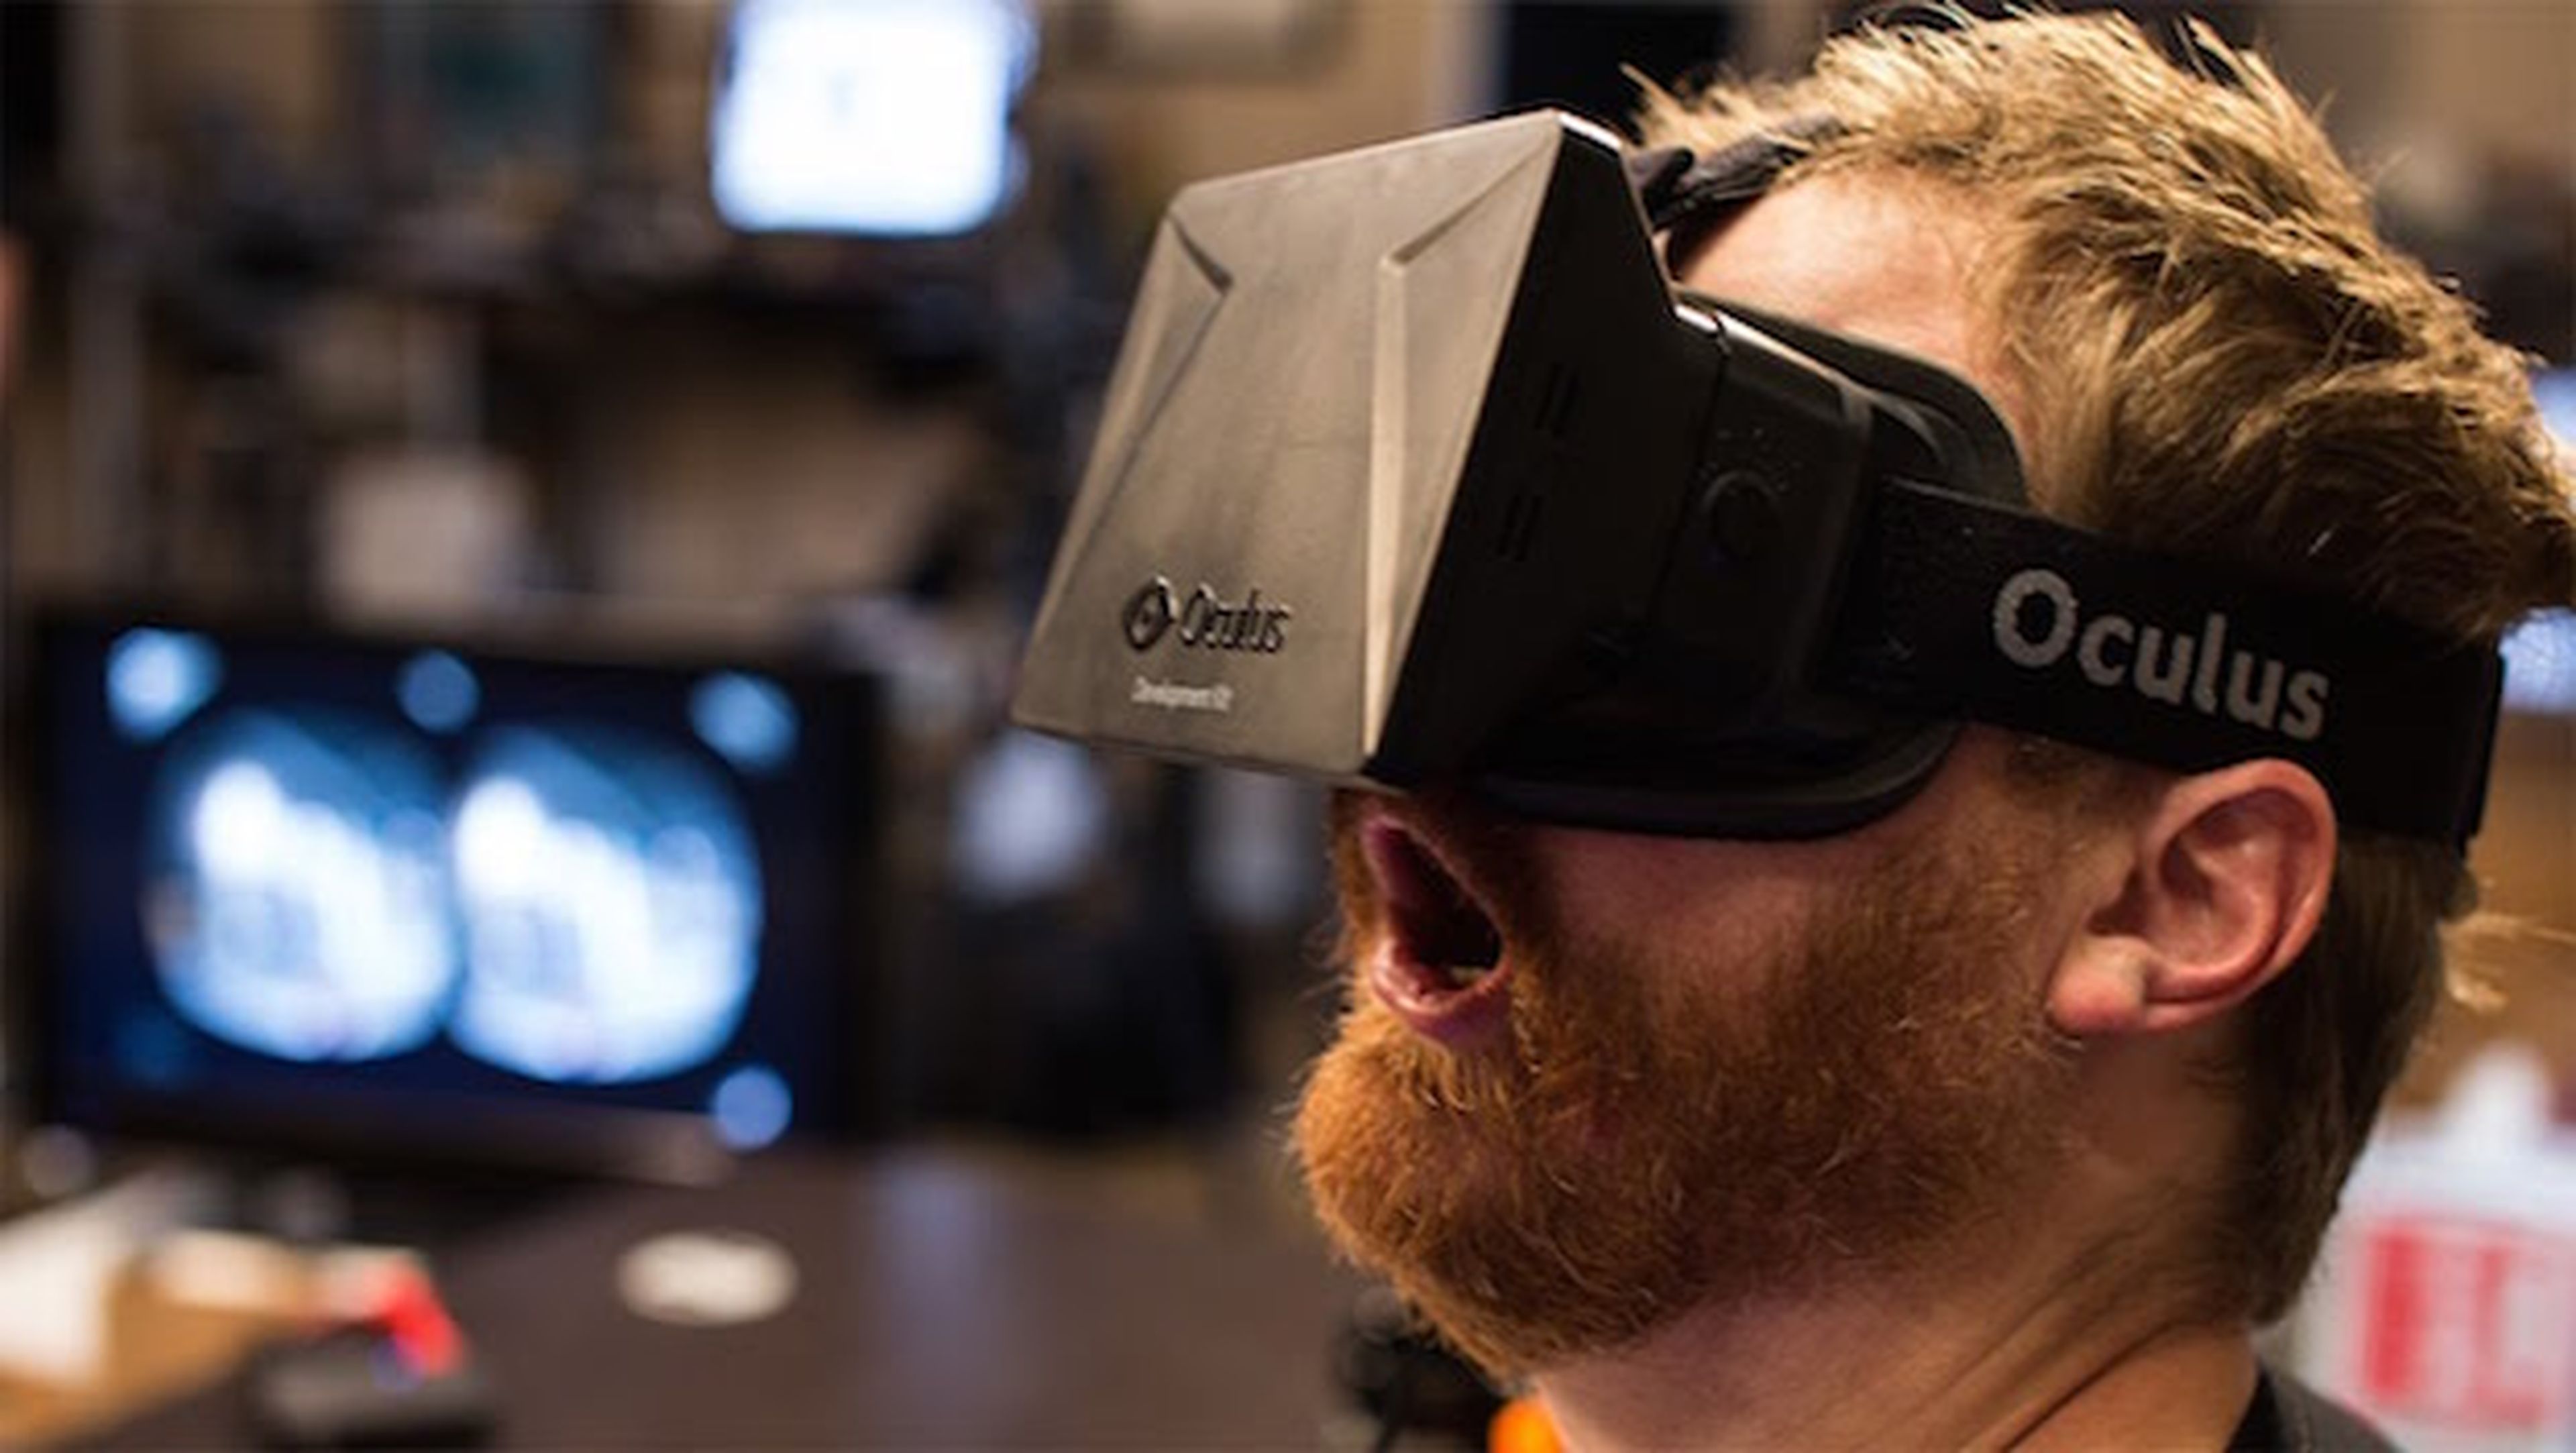 Oculus quiere ampliar su biblioteca de contenido VR